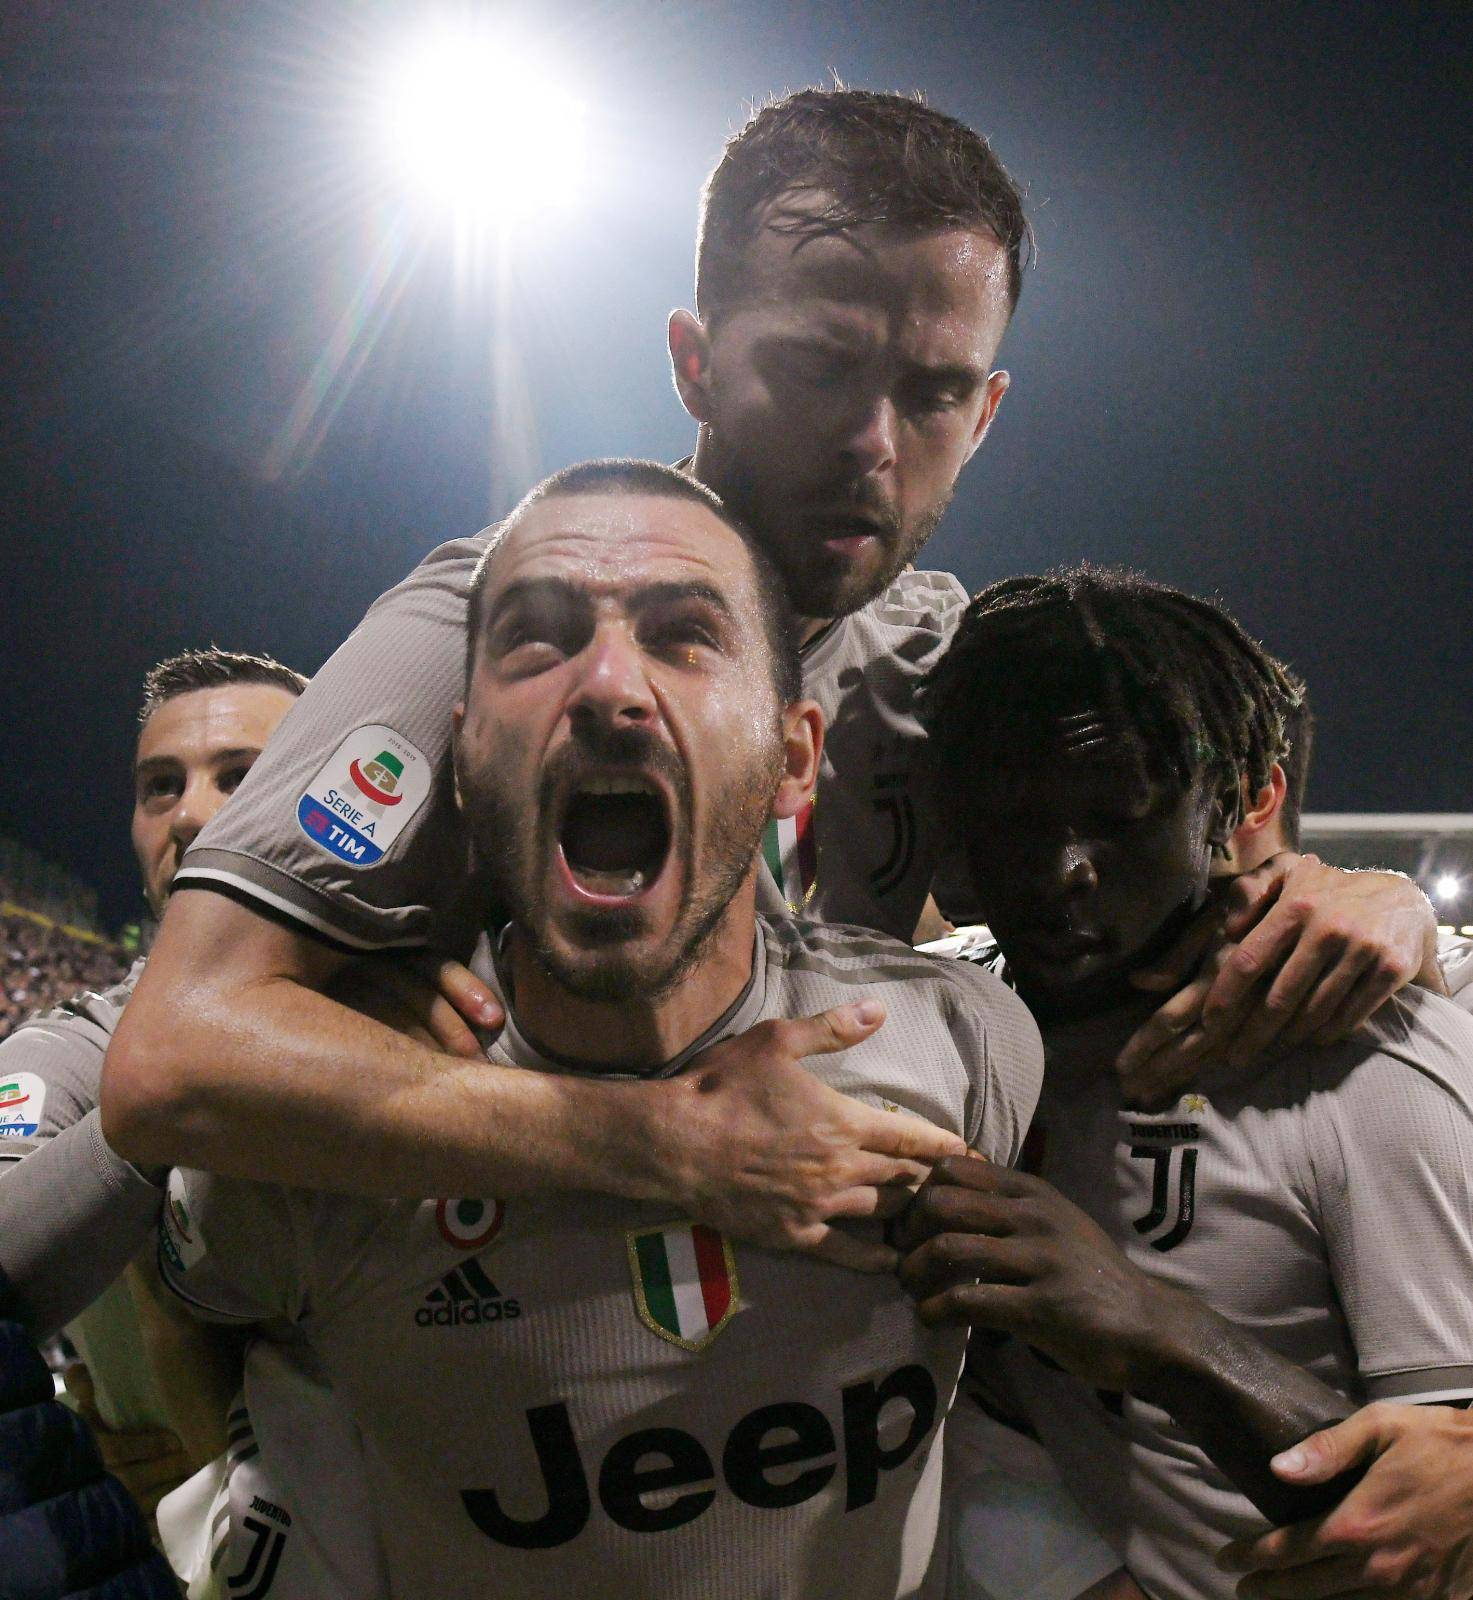 Serie A - Cagliari v Juventus